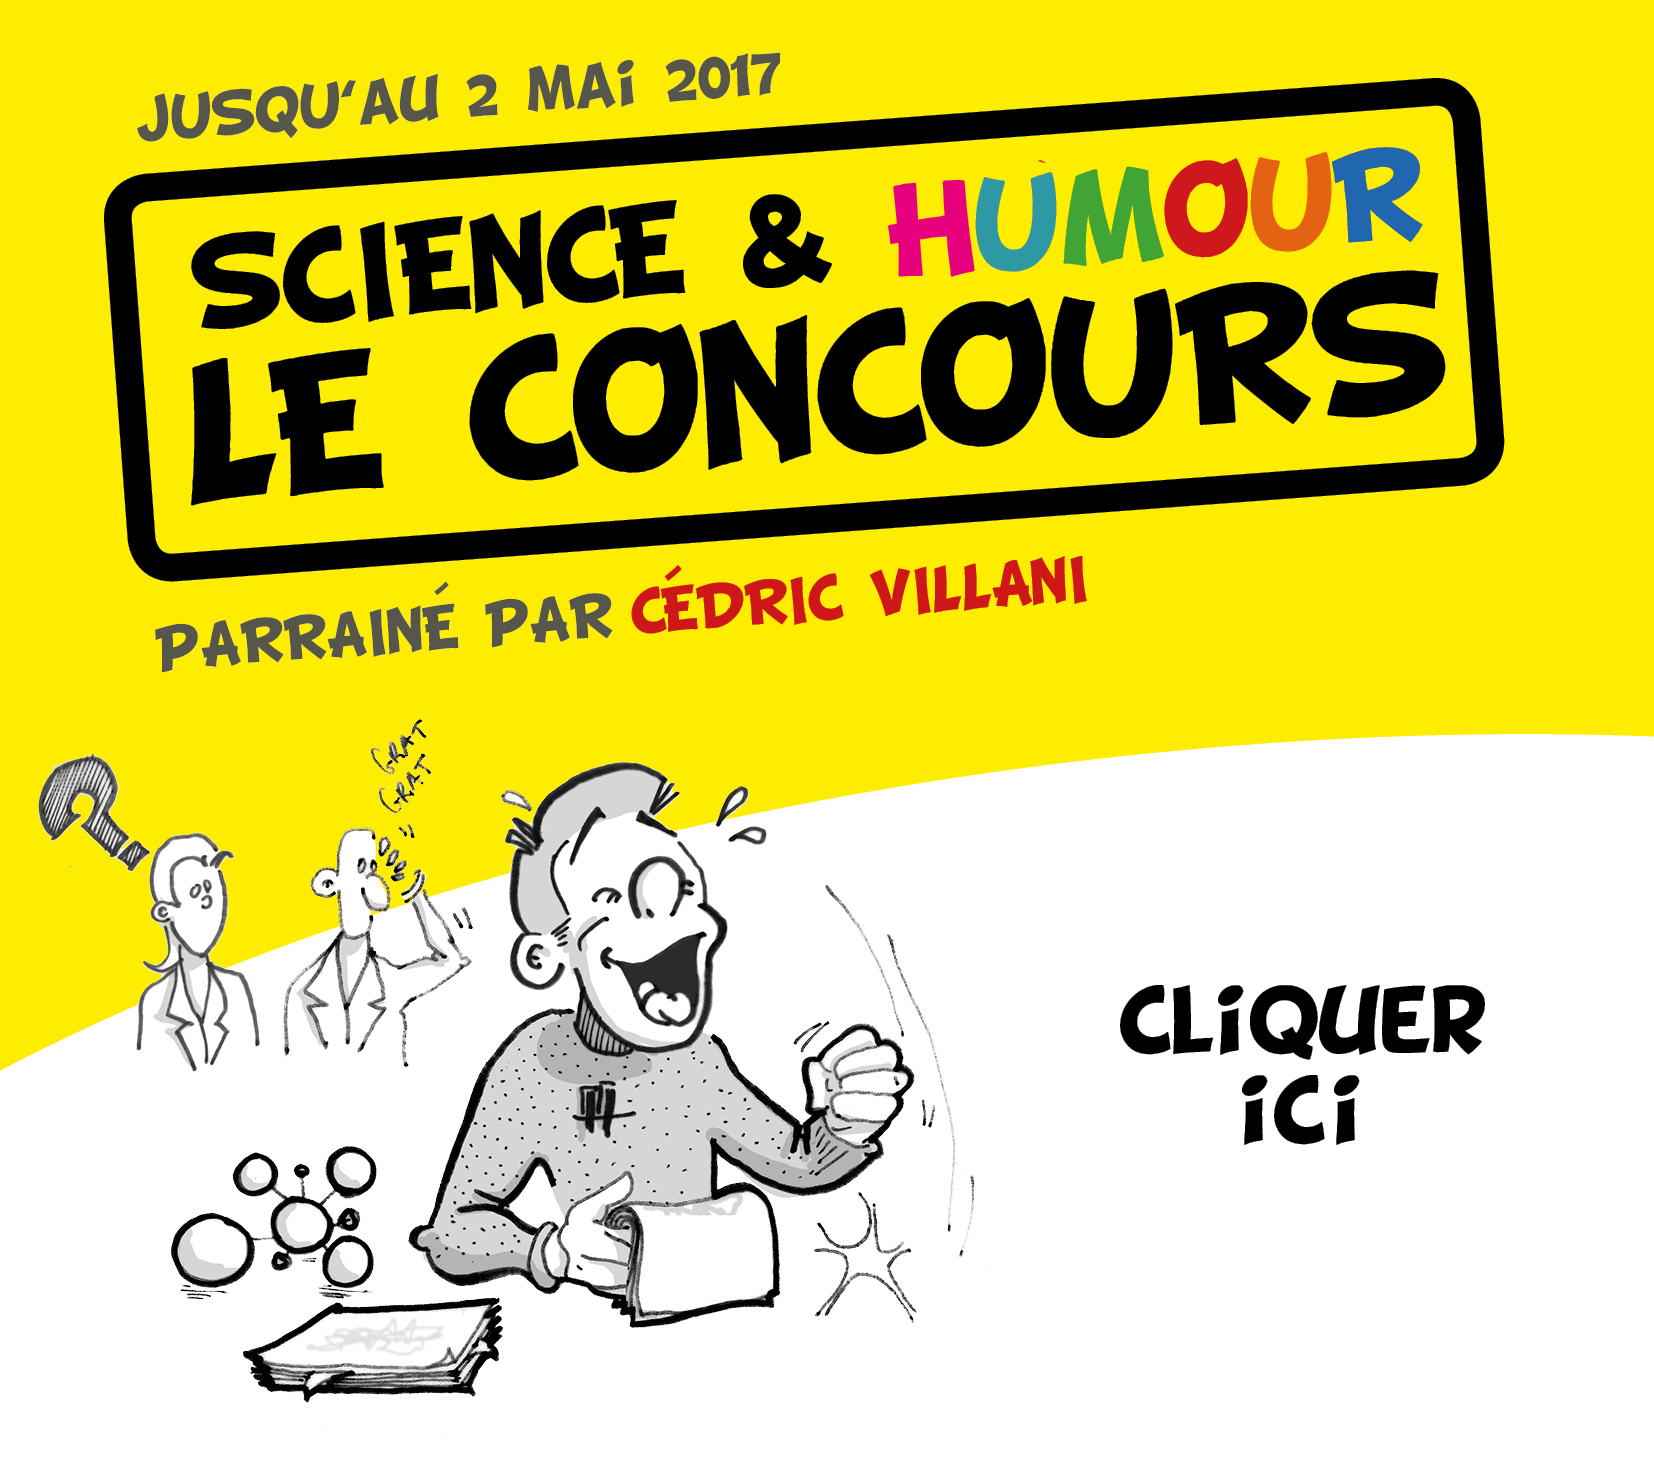 Ouverture du concours Science & Humour, parrainé par Cédric Villani